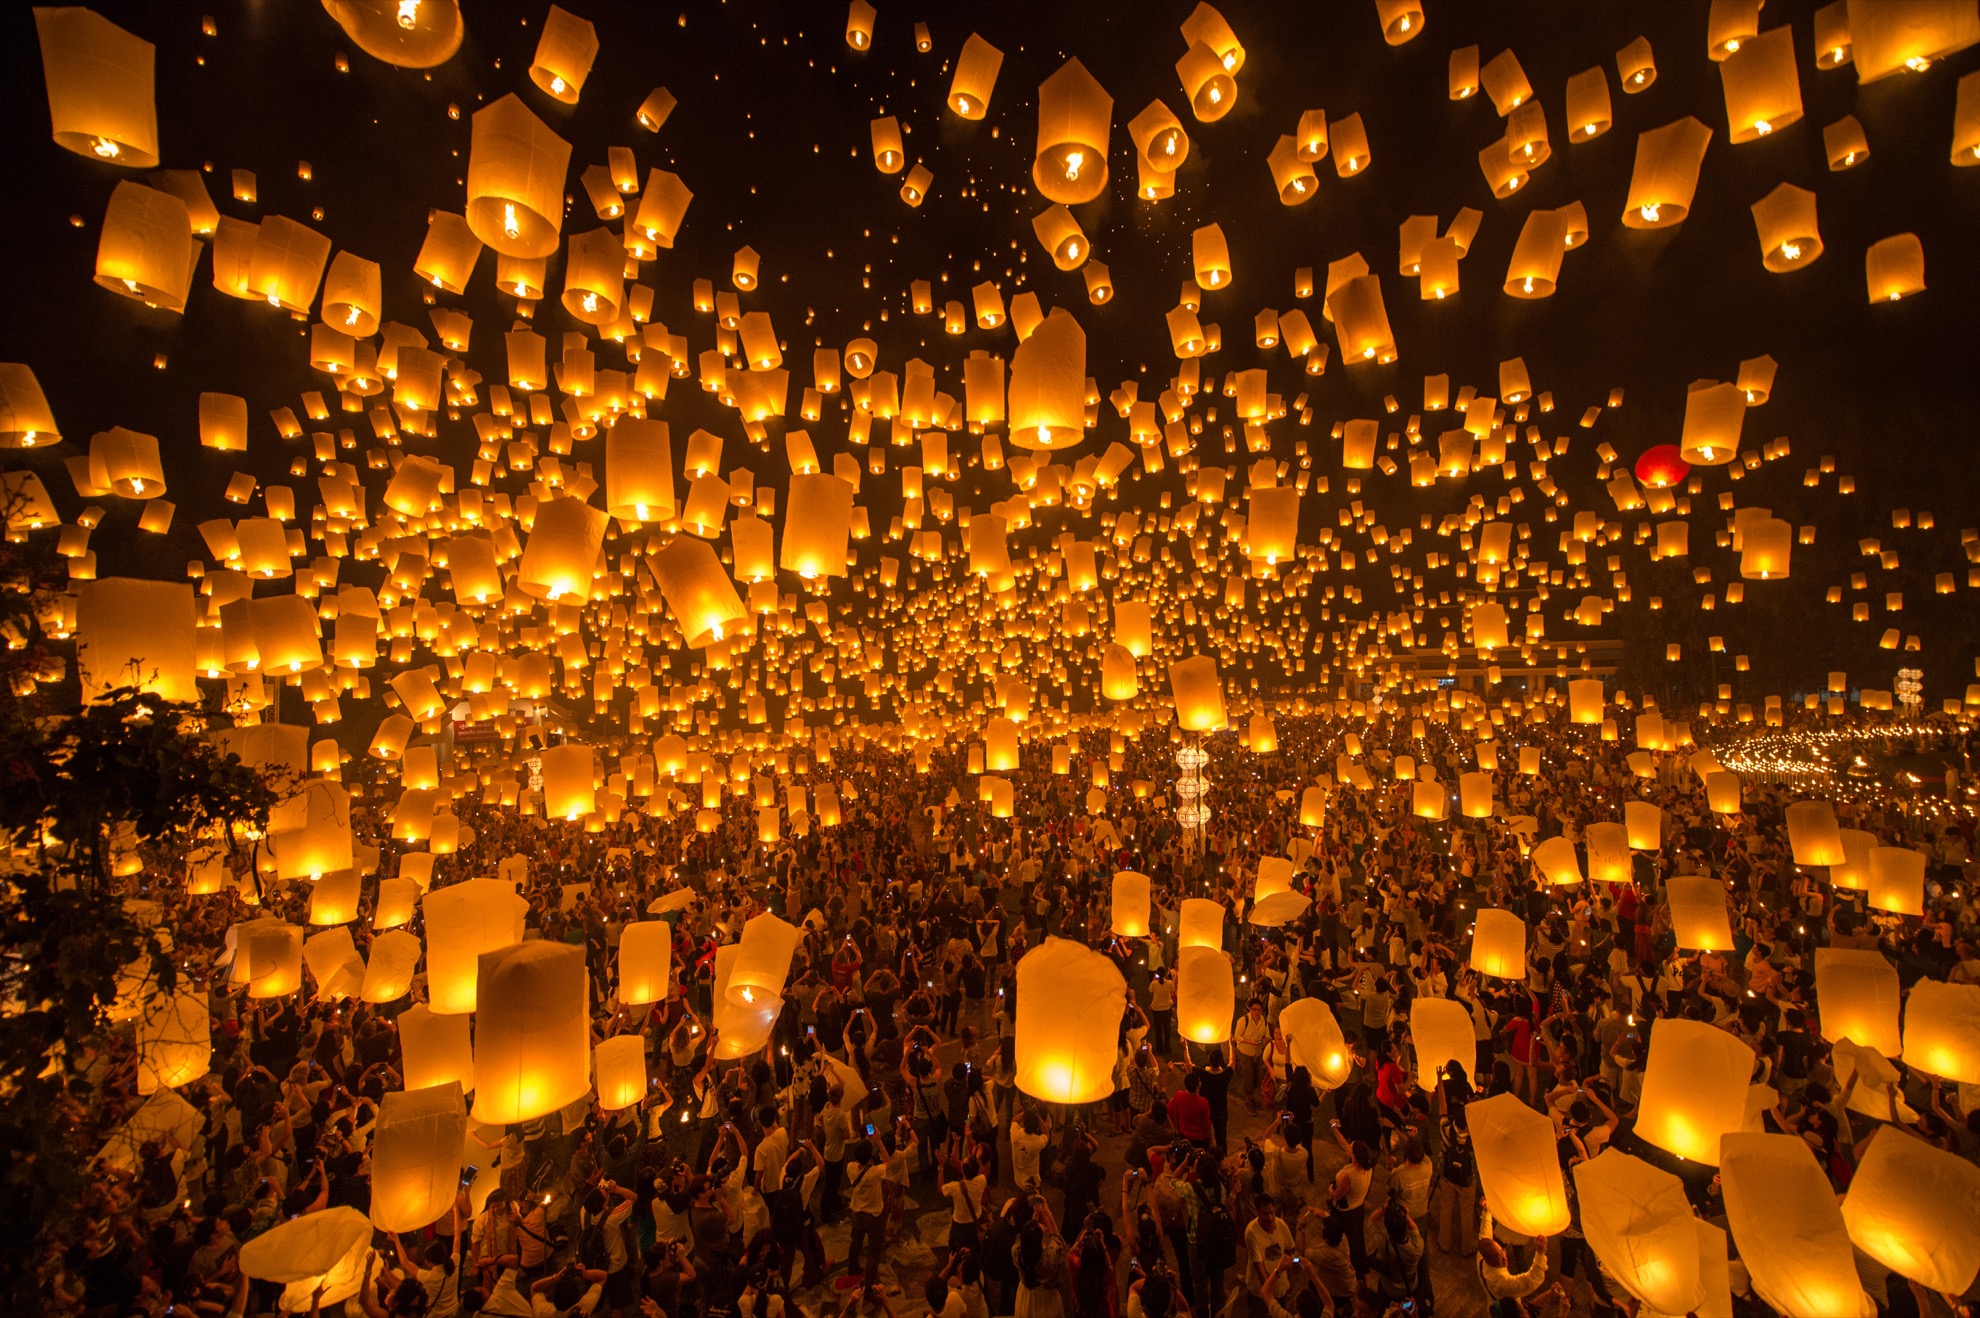 7 Datos rápidos sobre el festival Yi Peng Lantern de Tailandia - 13